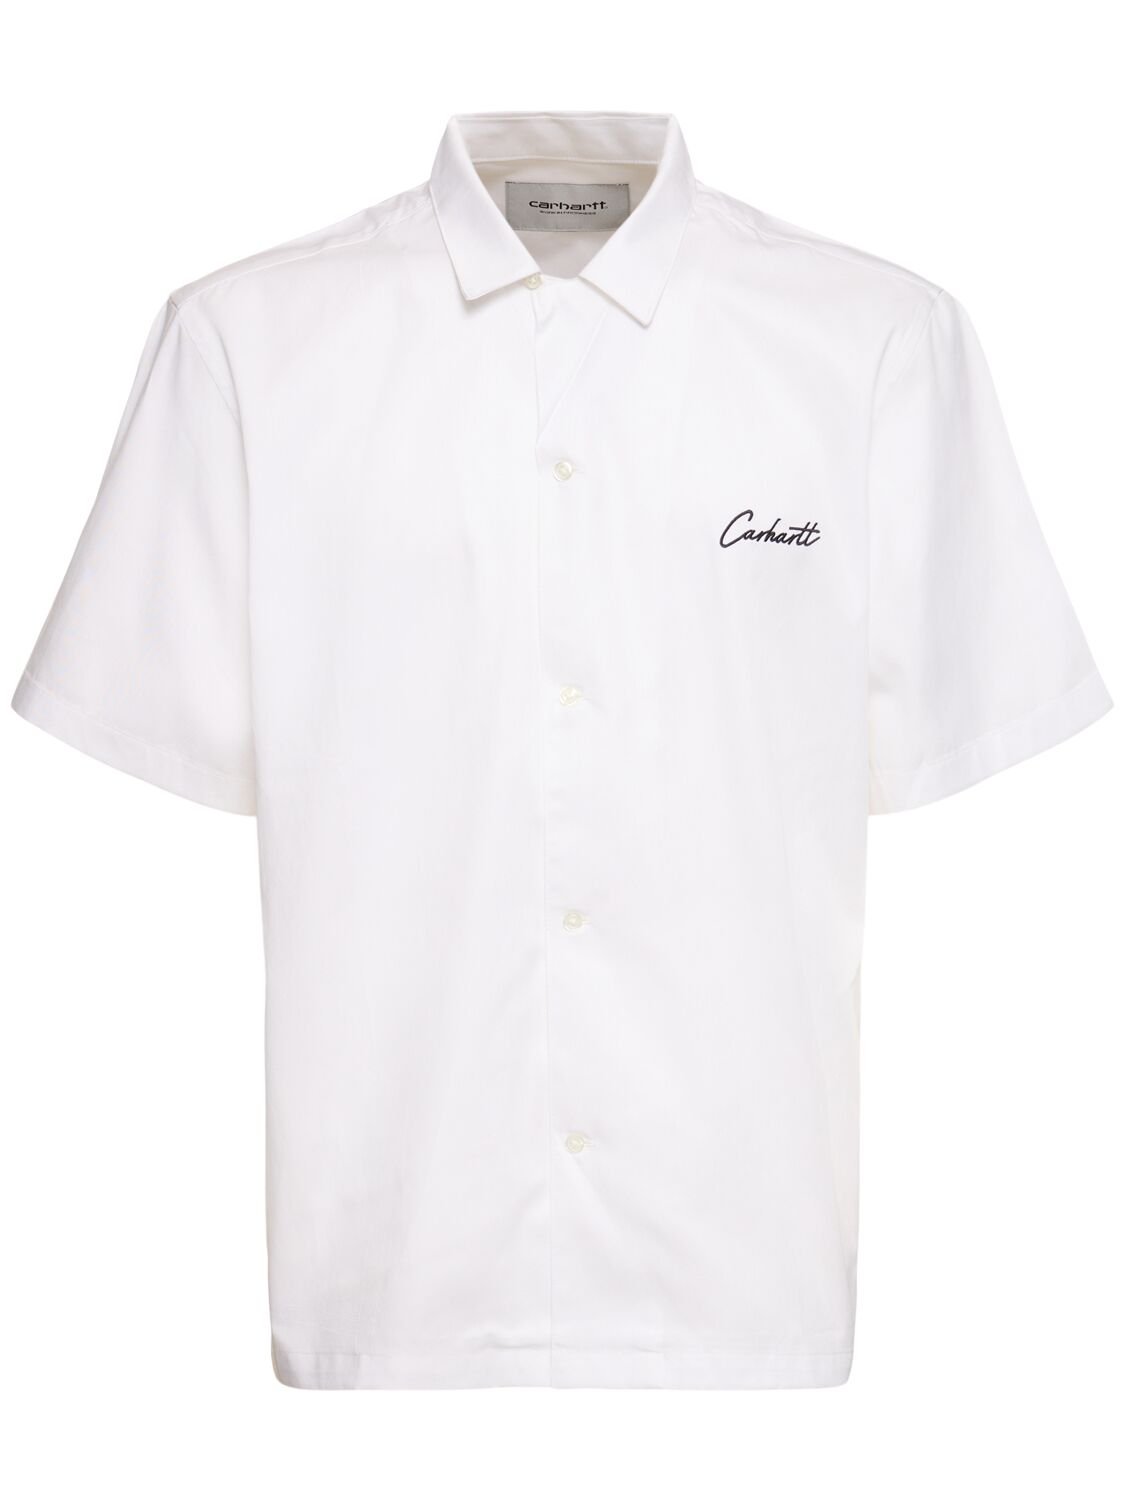 Carhartt Delray Short Sleeve Shirt In 화이트